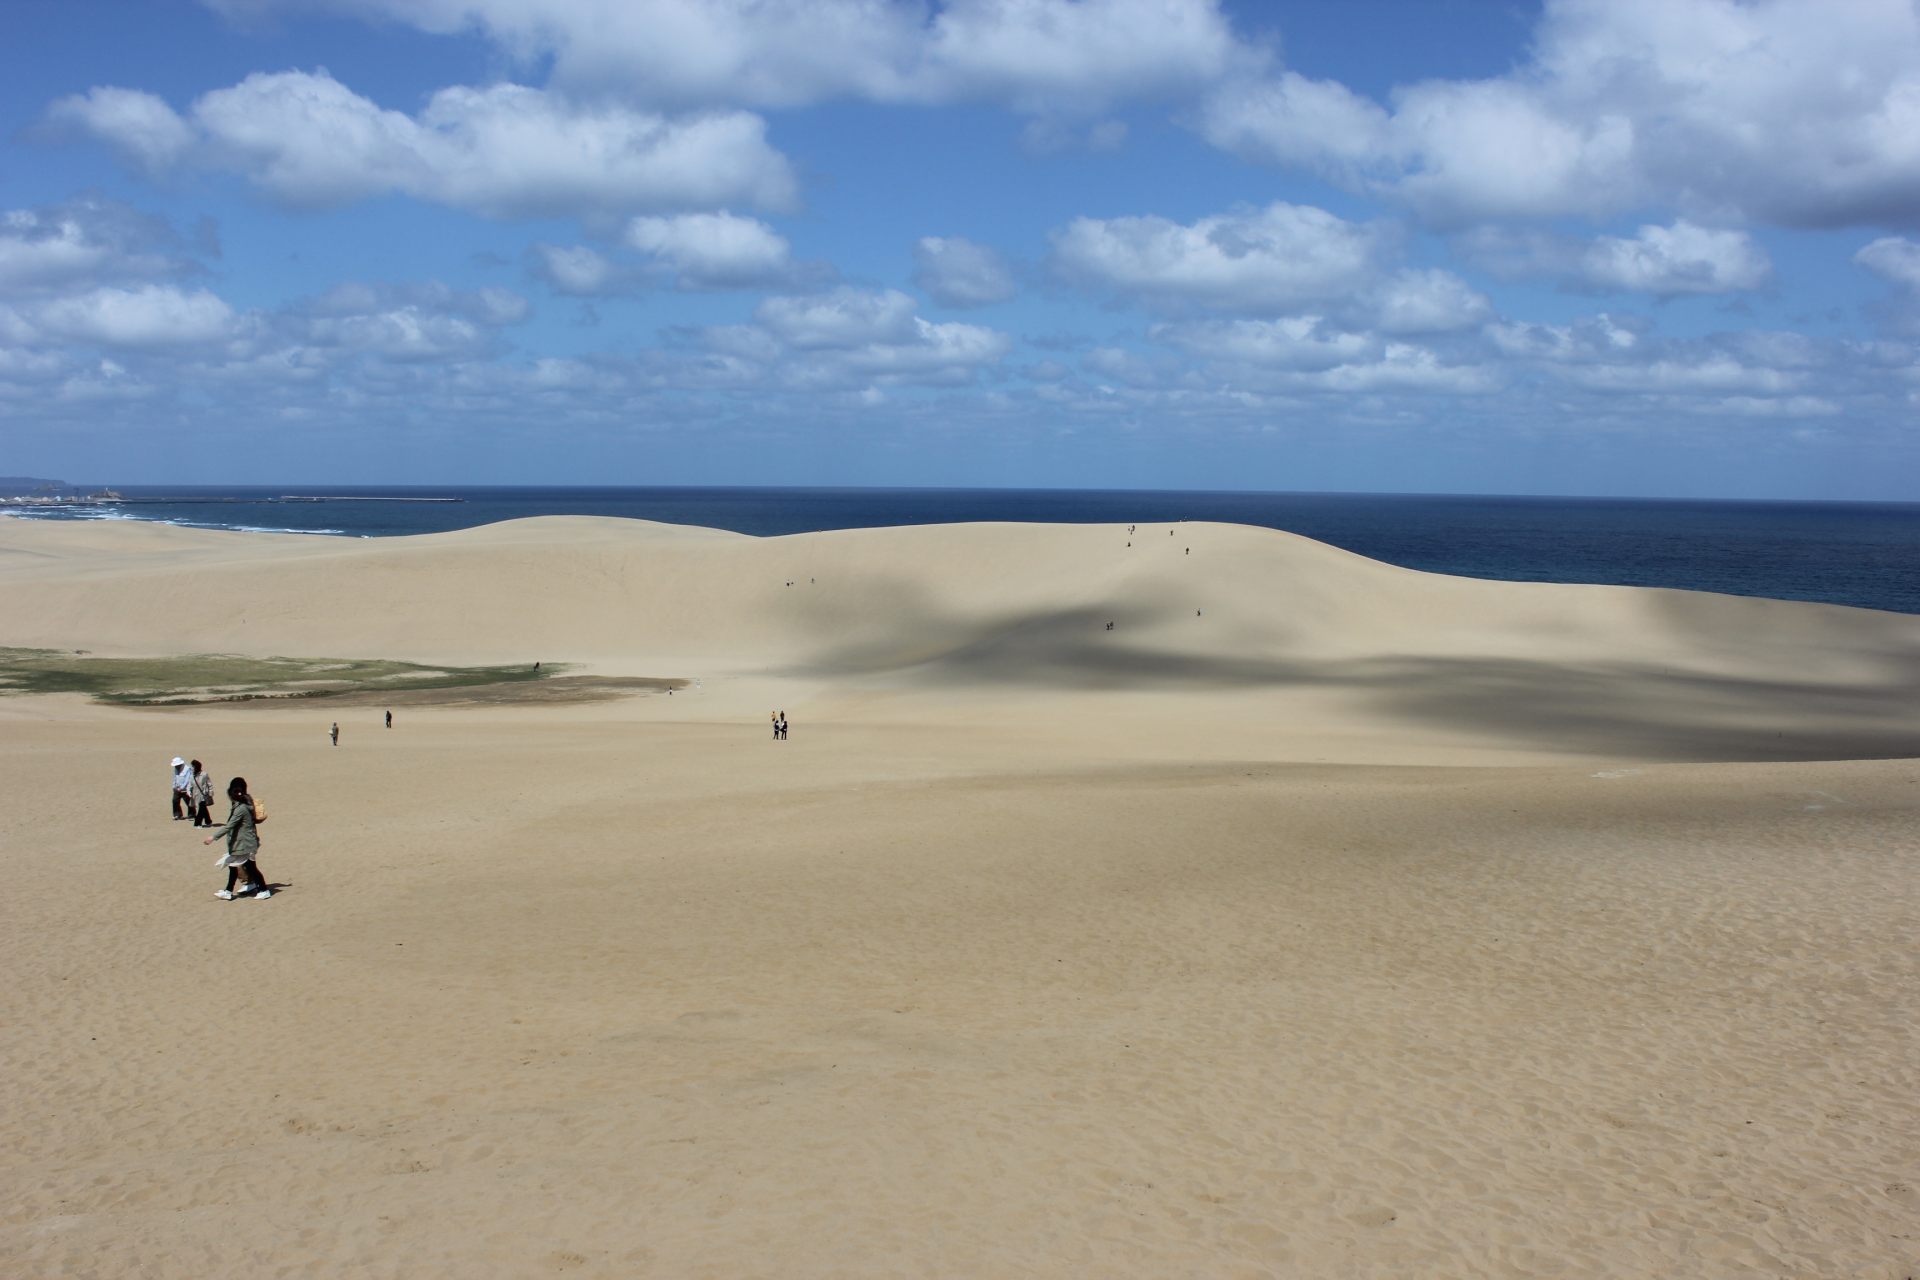 Arrêtez-vous au centre des visiteurs sur les dunes de sable de Tottori et découvrez des expositions sur les dunes de sable et le géoparc. Un guide est toujours là aussi.
(Photo fournie par Natural Park Foundation Tottori Branch)